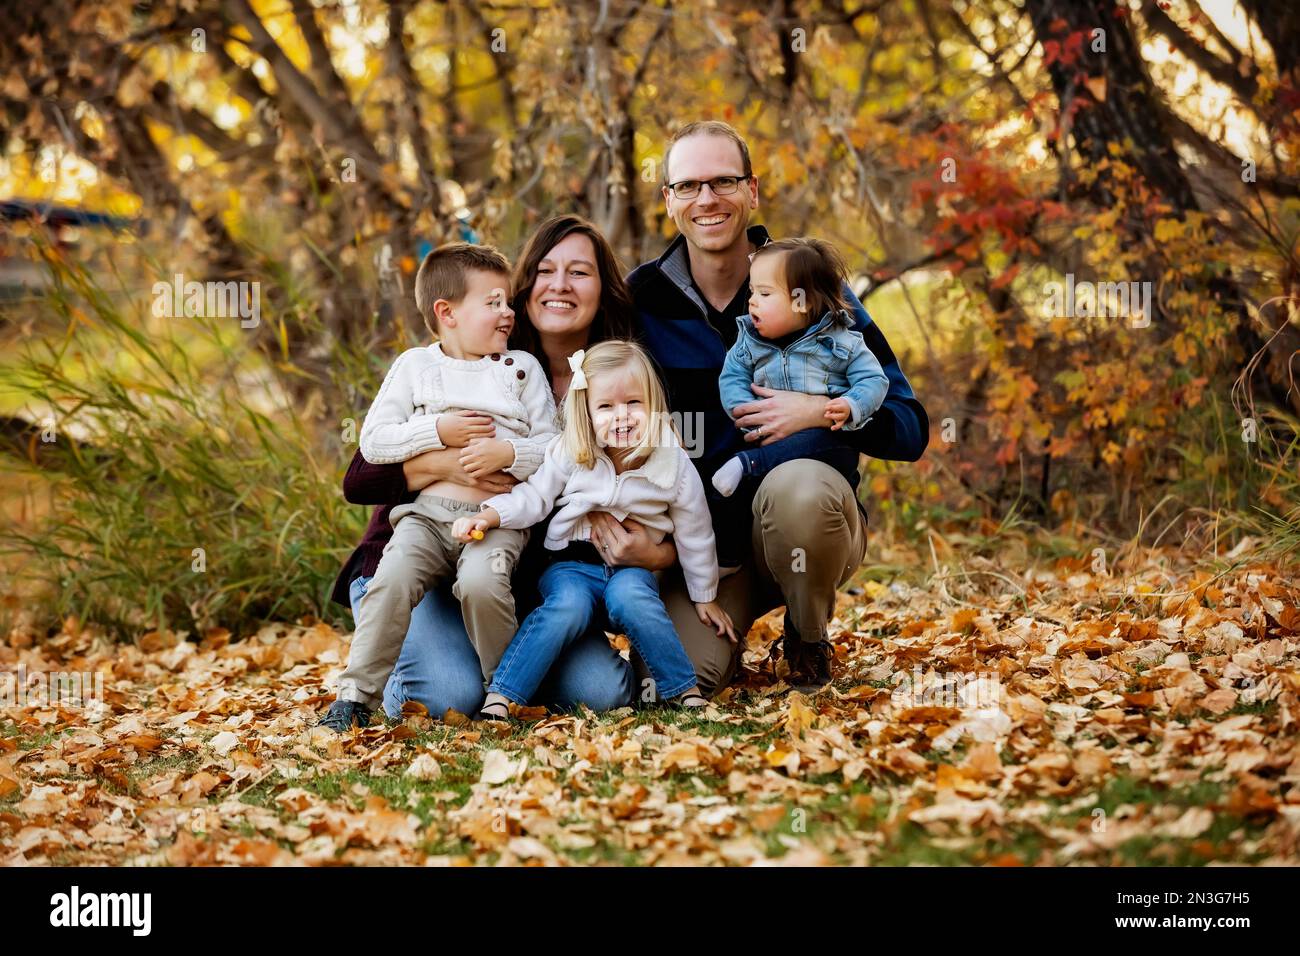 Porträt einer jungen Familie mit drei Kindern, jüngste Tochter mit Down-Syndrom, in einem Stadtpark während der Herbstsaison Stockfoto